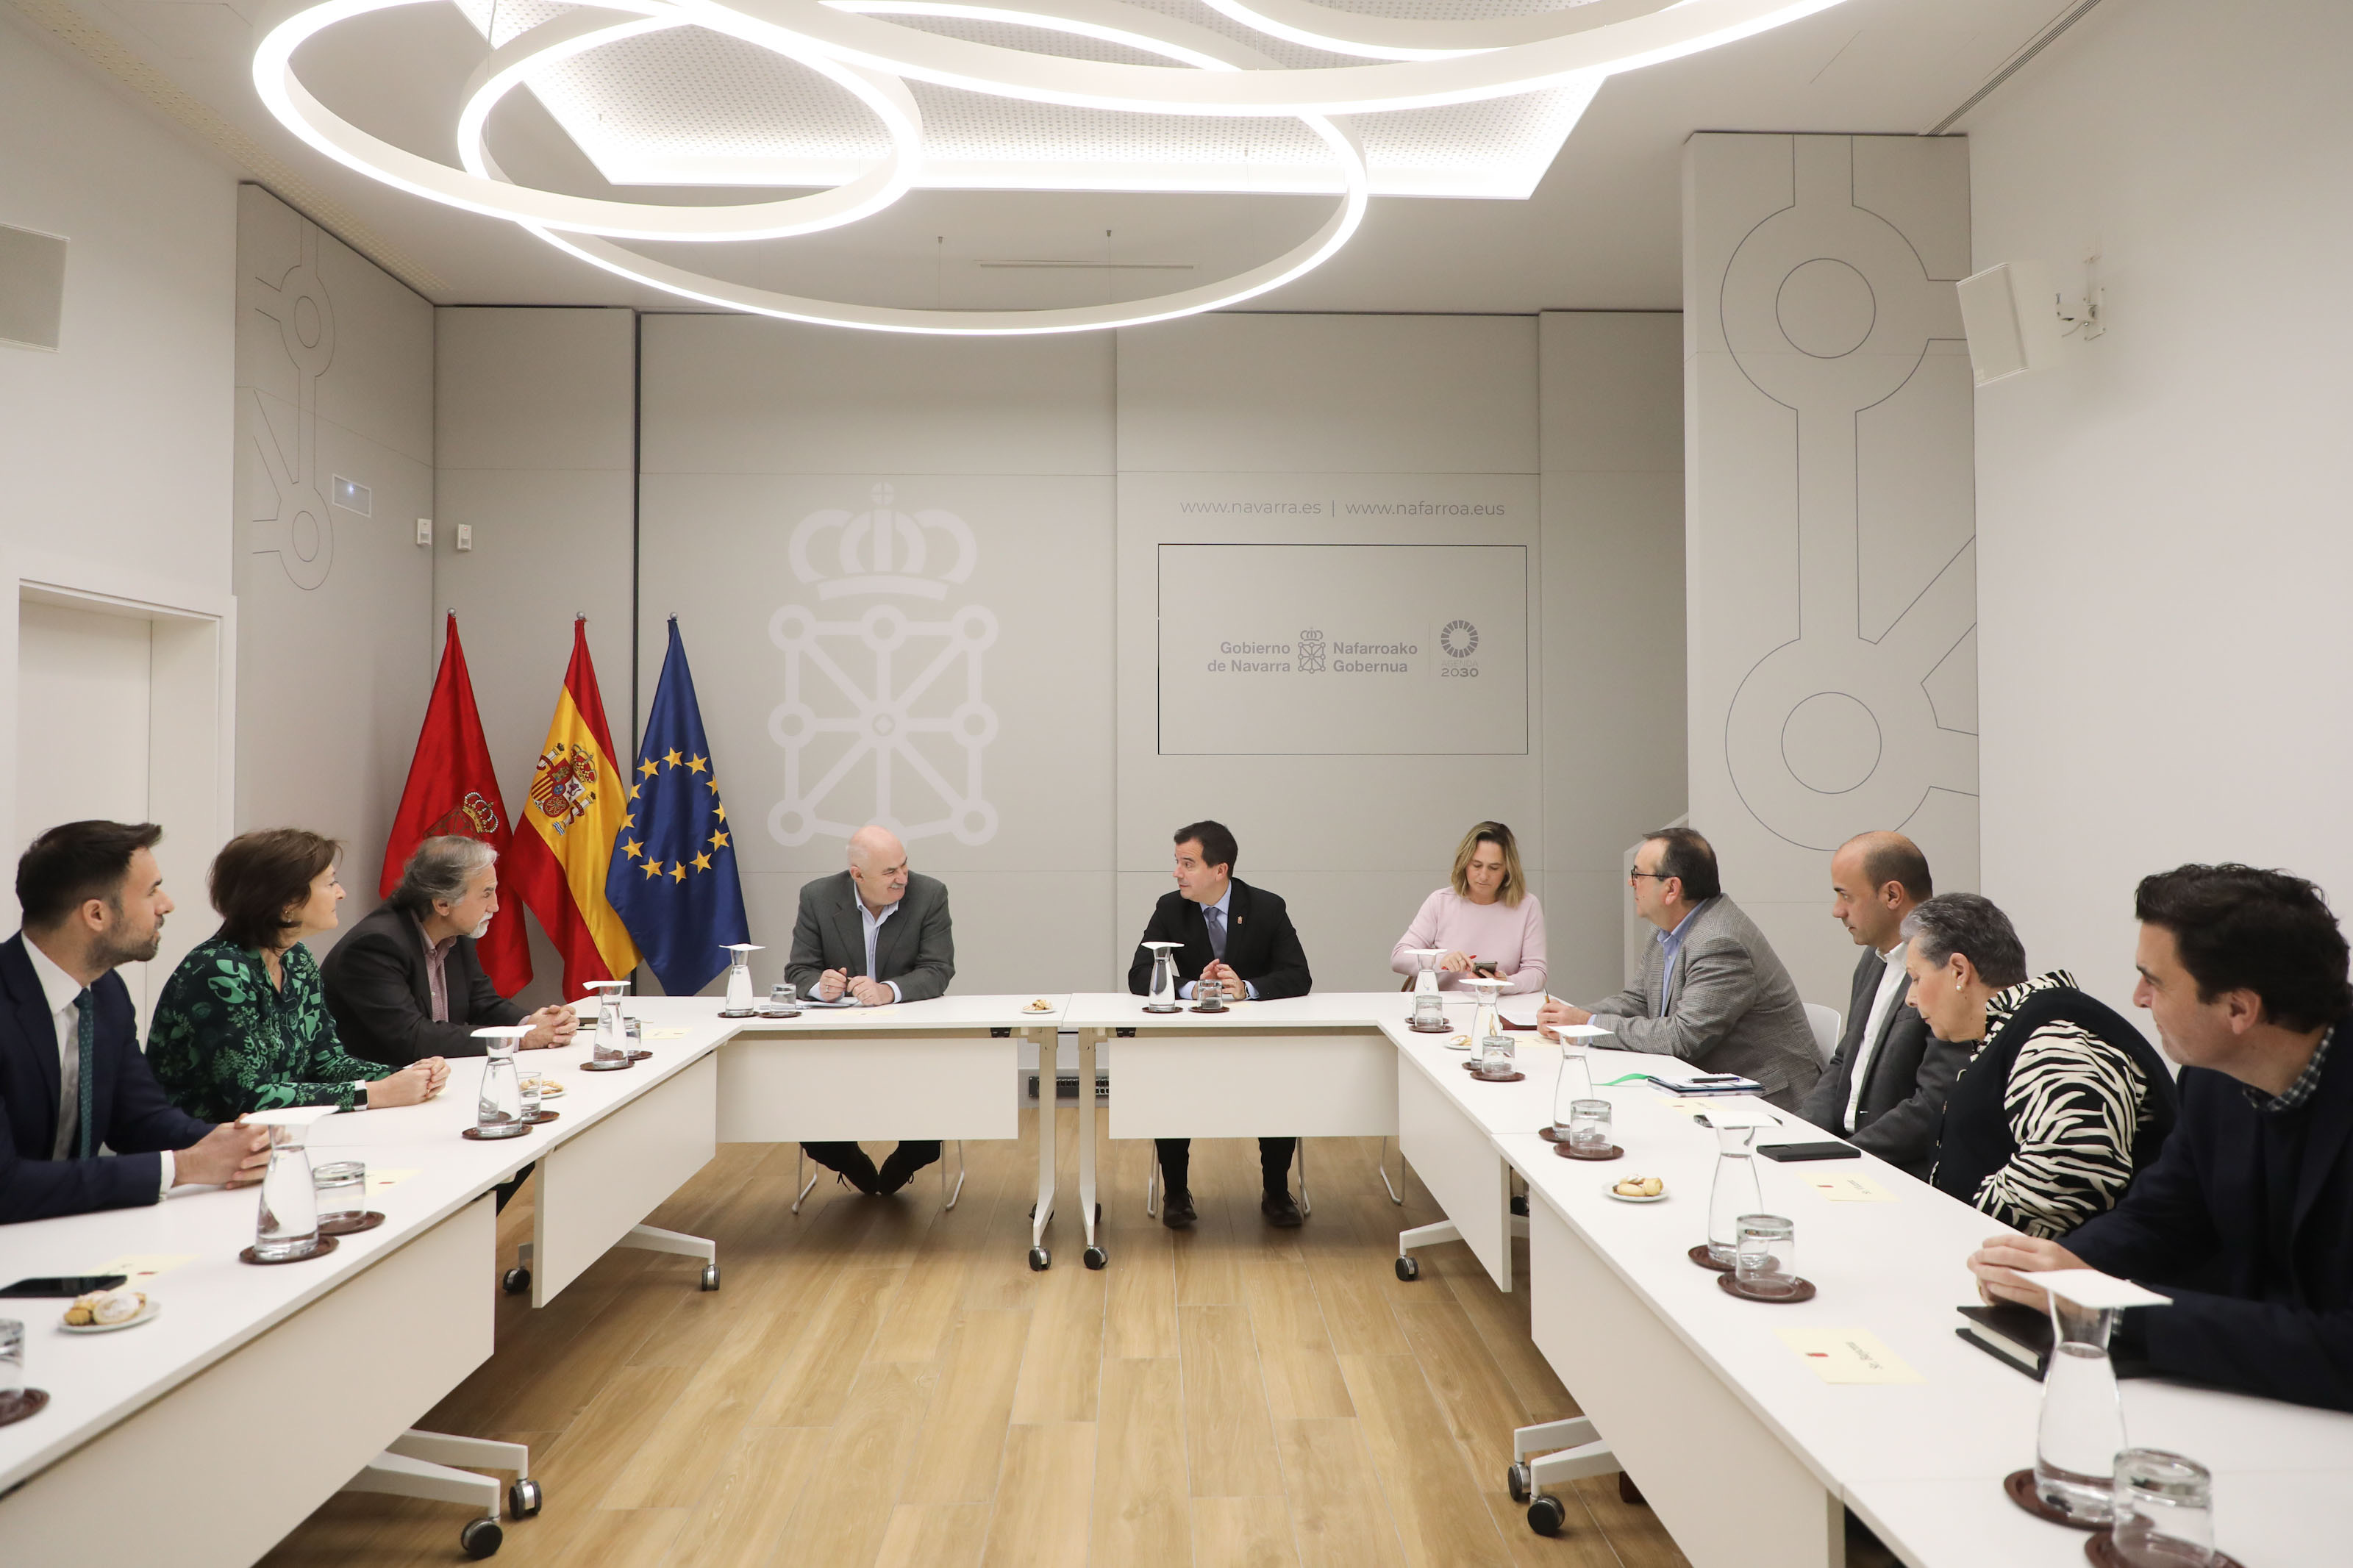 El vicepresidente Aierdi y el consejero Irujo presiden la reunión mantenida con representantes del Ayuntamiento de Cortes, Nasuvinsa y la compañia Energyloop. 